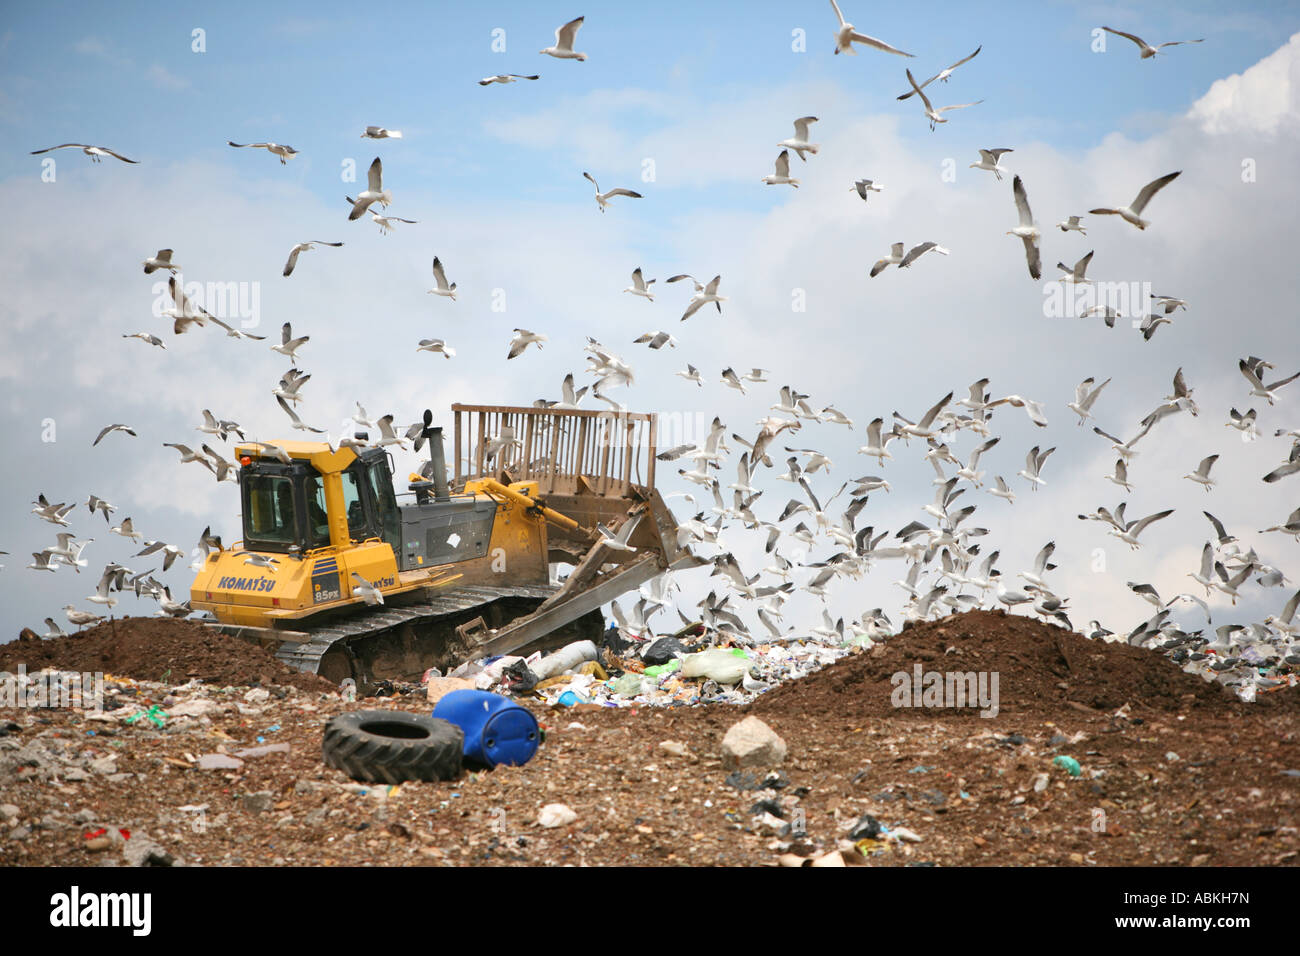 Bulldozer auf einer Deponie scheint bei Möwen über dem Abfall und Müll zu stürzen.  Umwelt-Image der Abfallwirtschaft. Stockfoto